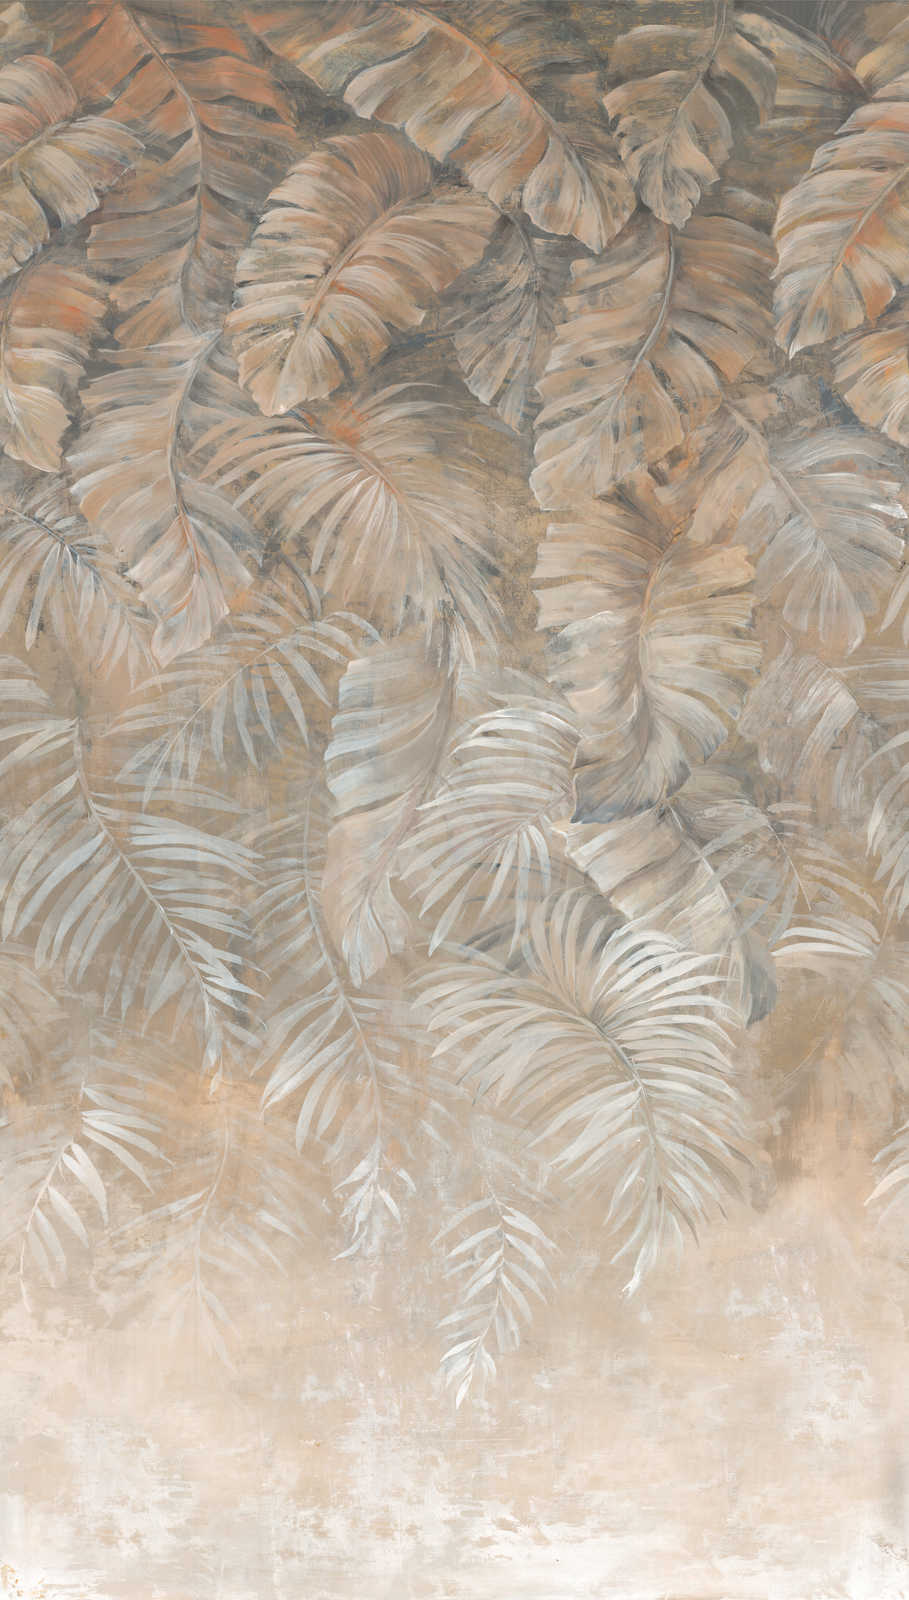             Papel pintado de grandes hojas de palmera en sutiles tonos tierra - marrón, beige, crema
        